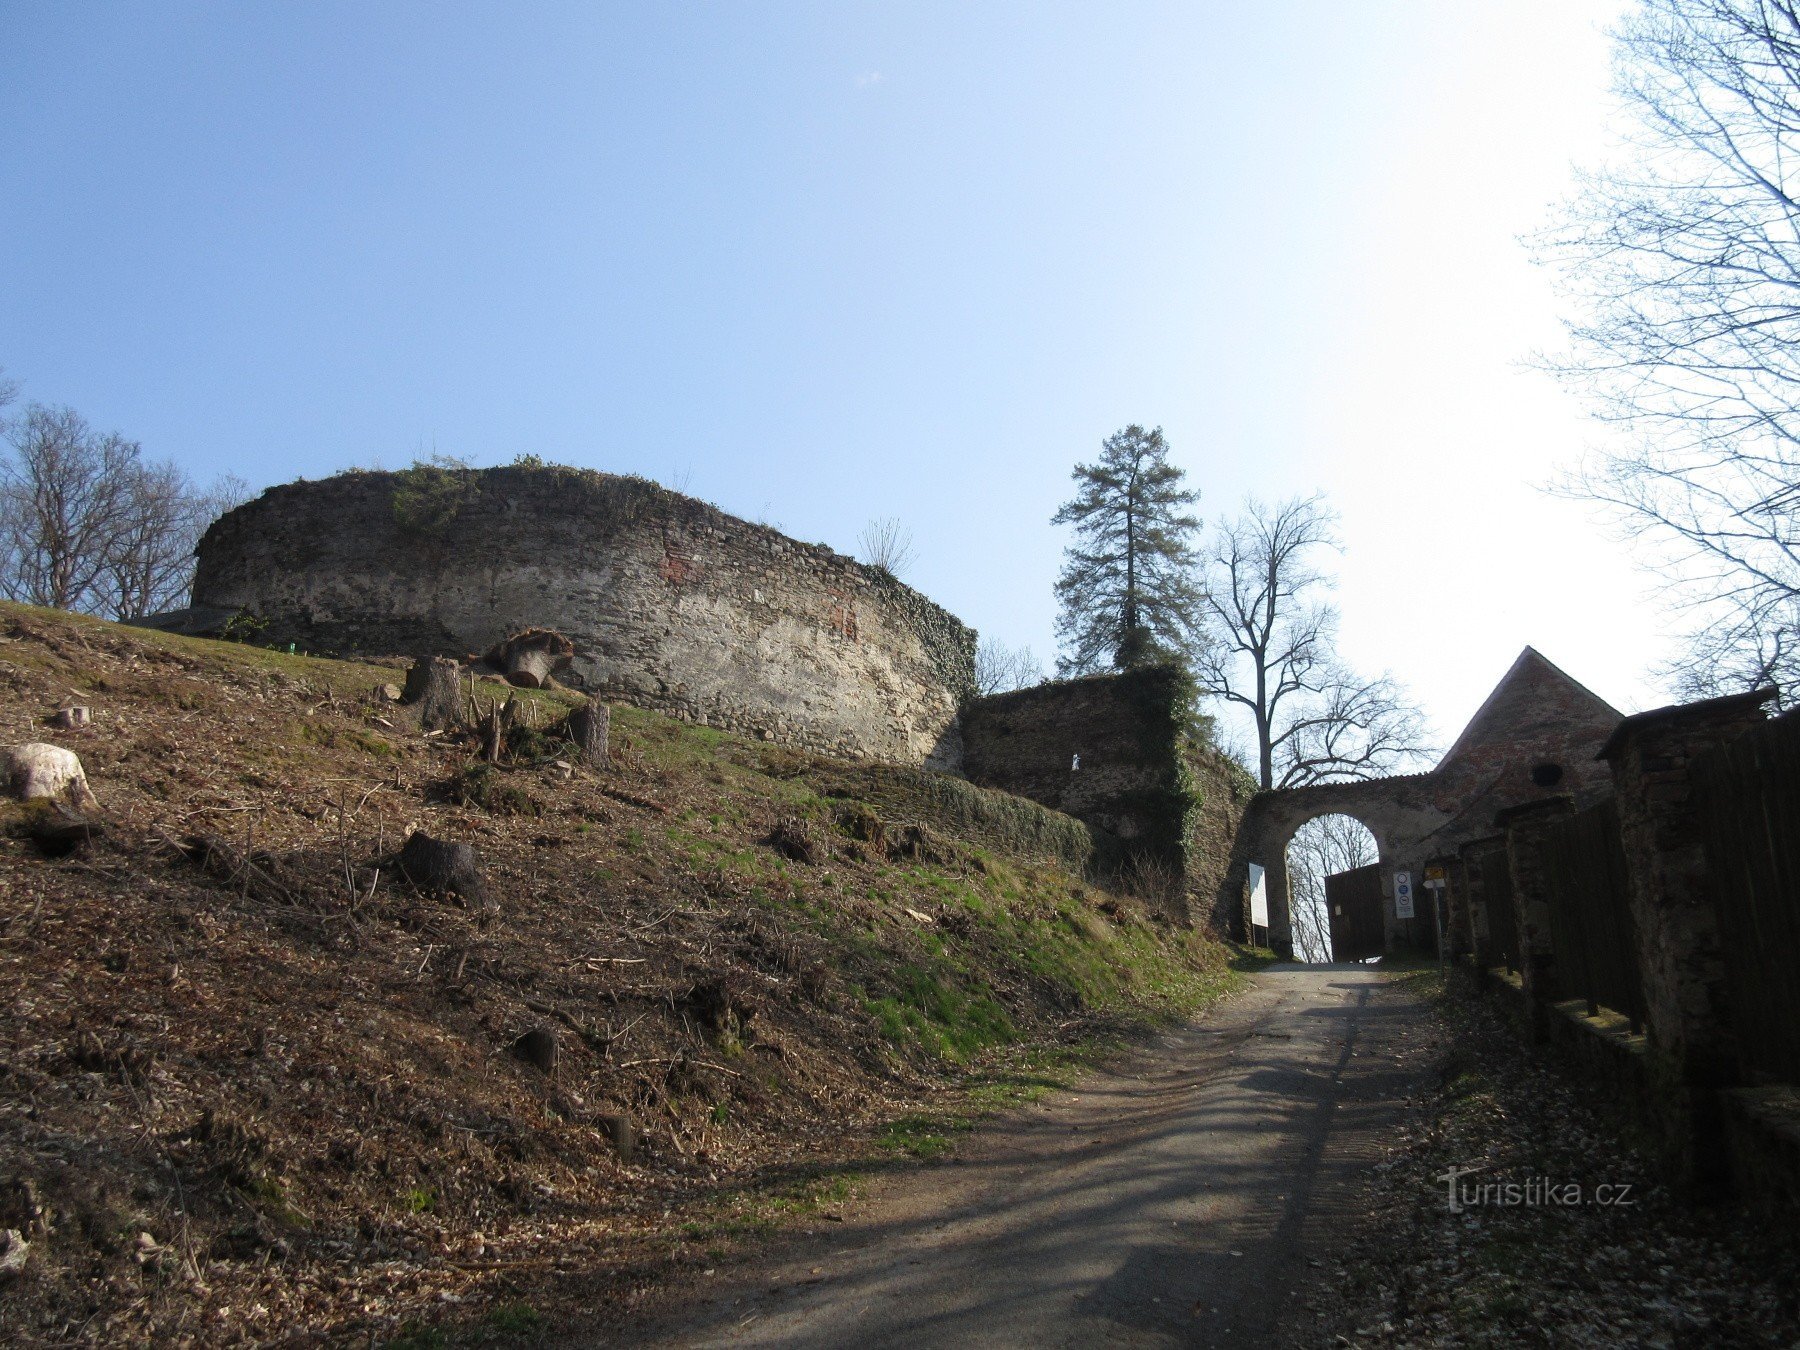 Auf Lehrpfaden zur Burg Pernštejn